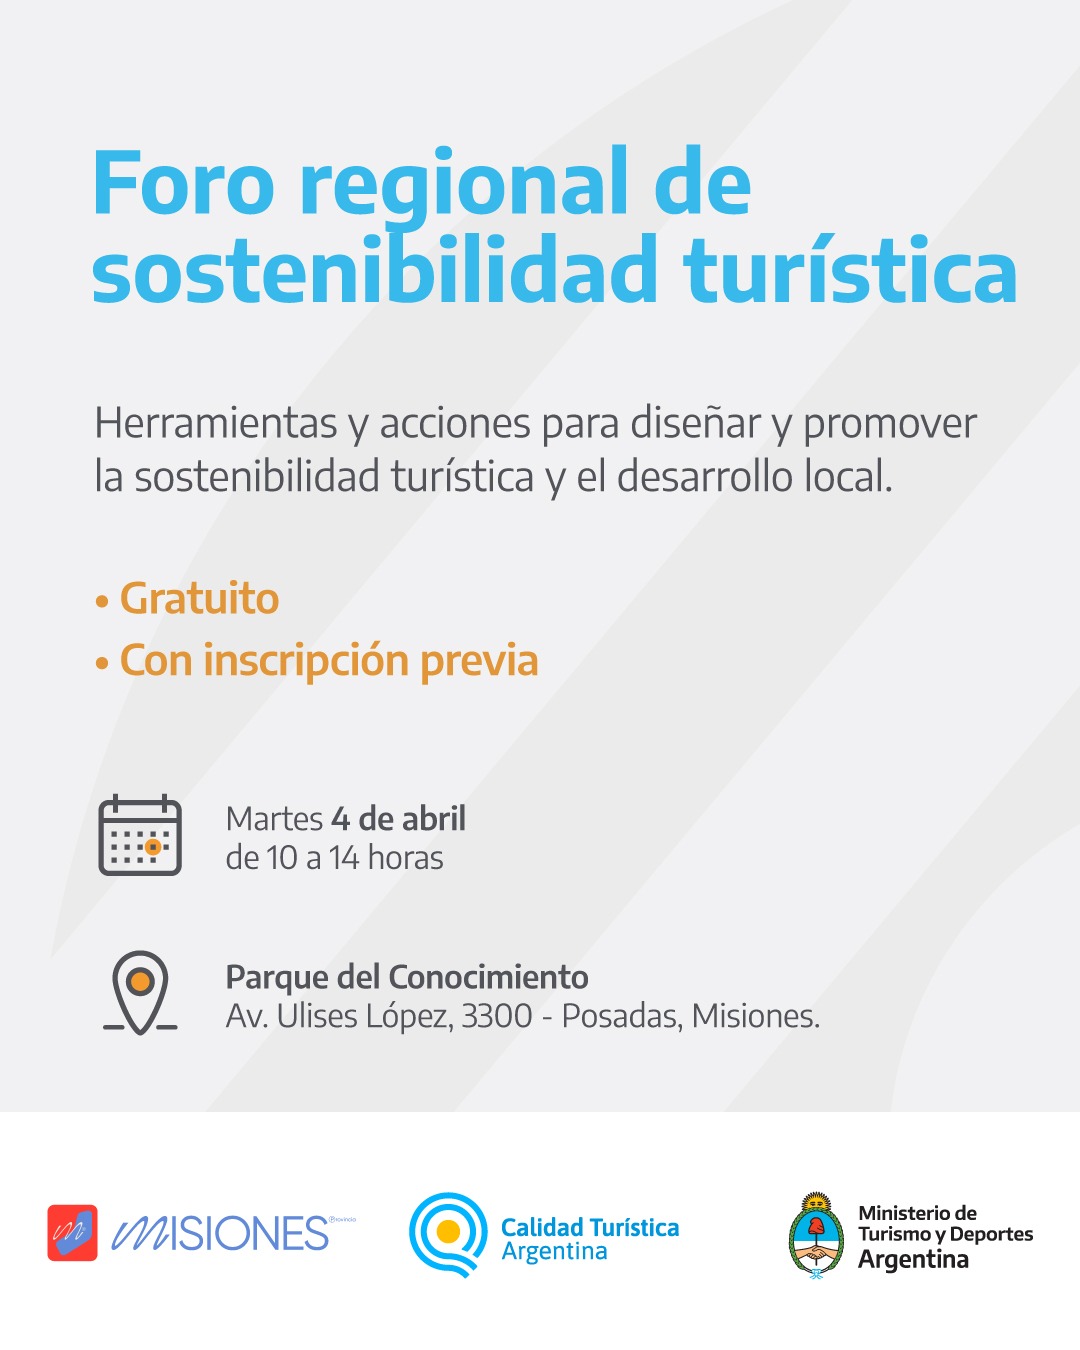 El 2° Foro Regional de Sostenibilidad Turística se realizará este martes en el Parque del Conocimiento imagen-2